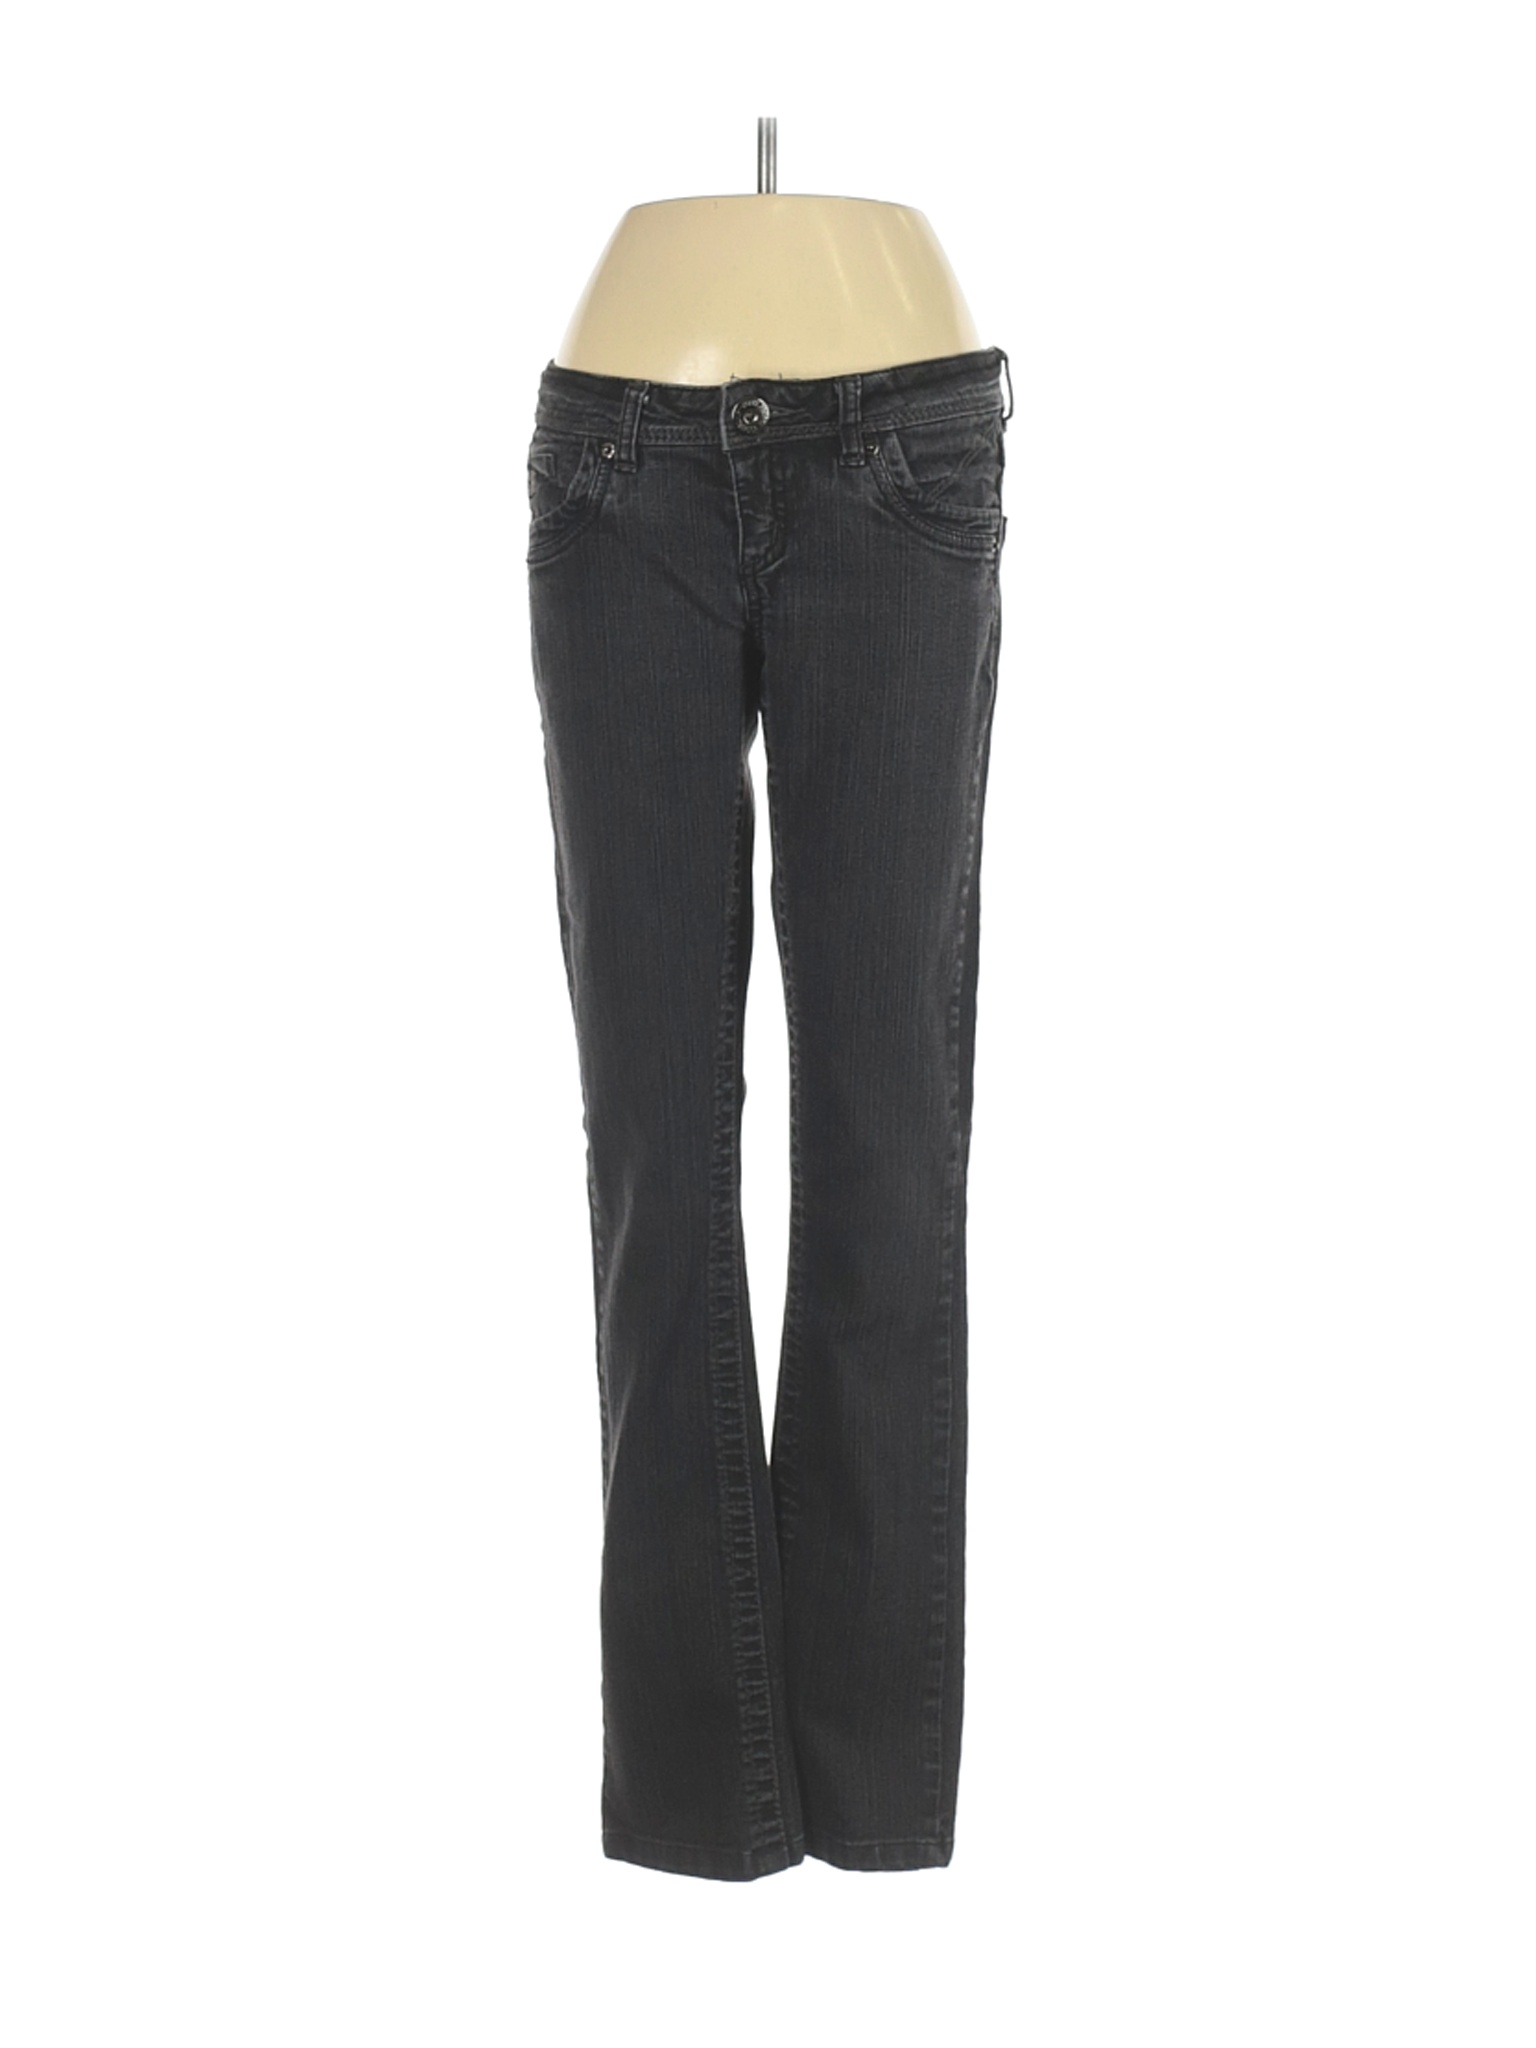 Foxy Jeans Women Black Jeans 24W | eBay